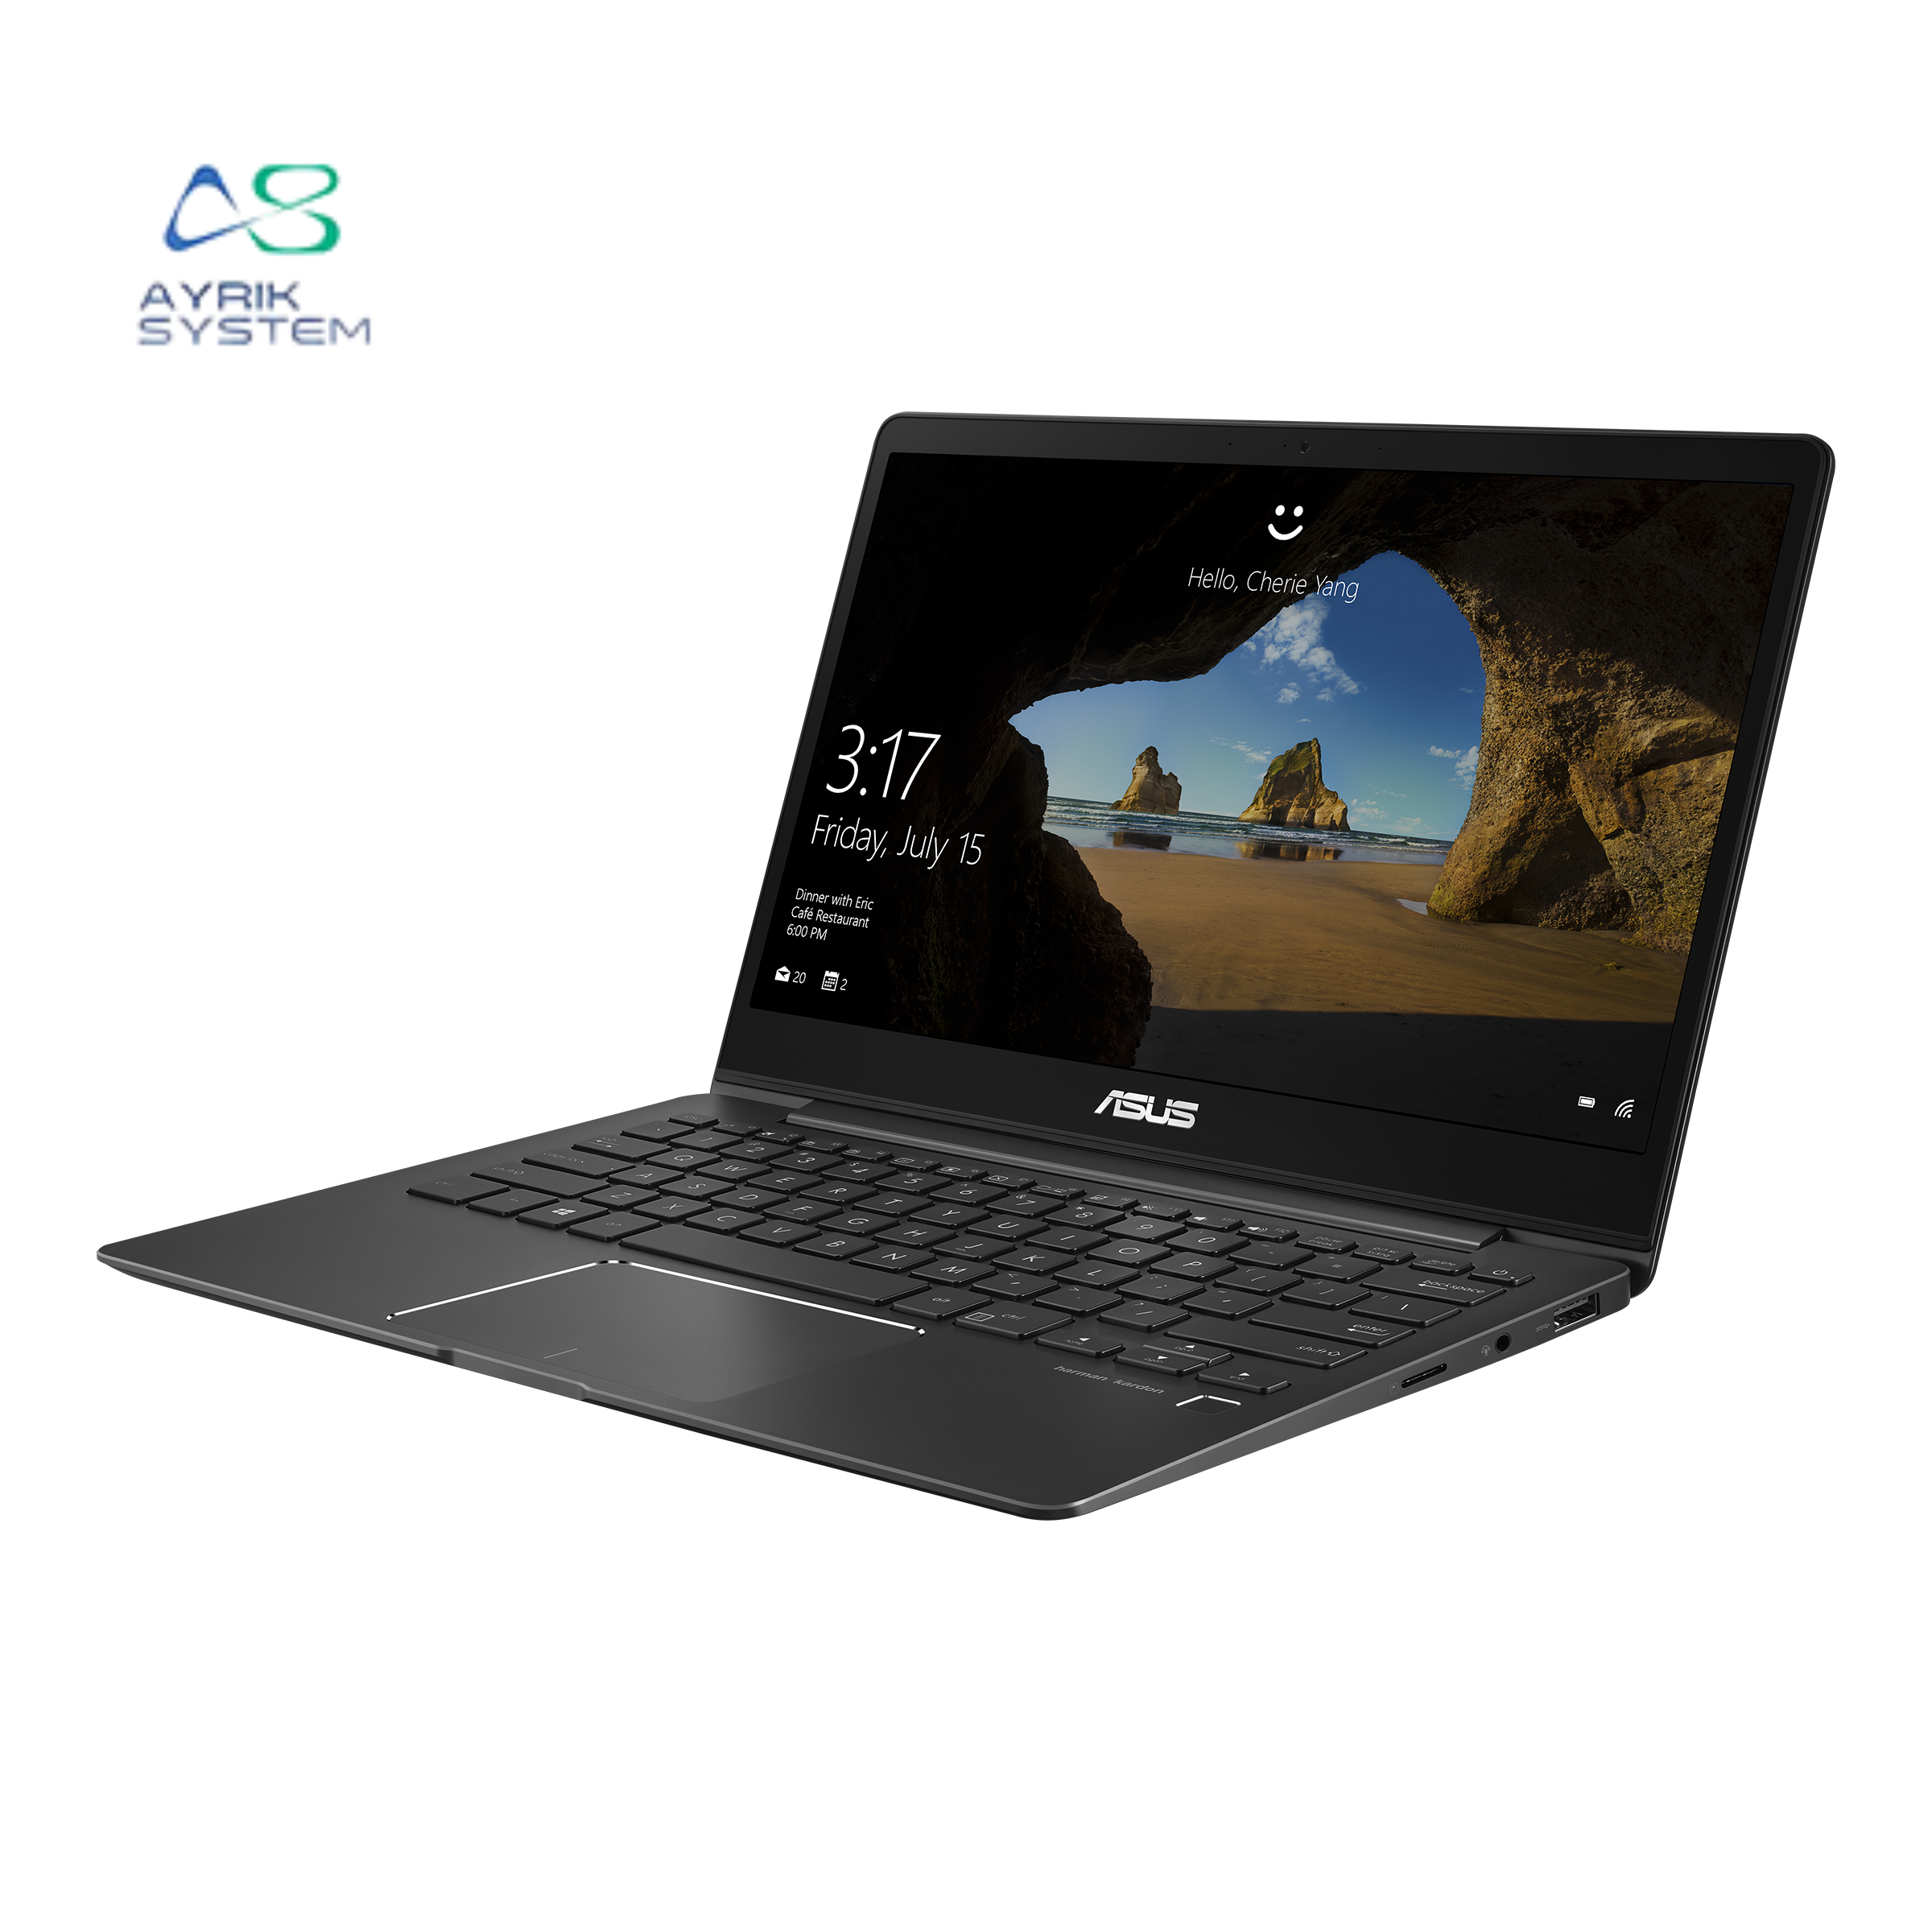 لپ تاپ ایسوس Asus ZenBook UX331FN  i7(8665U) 16GB DDR4 512SSD  Intel UHD  GeForce MX150 2GB 